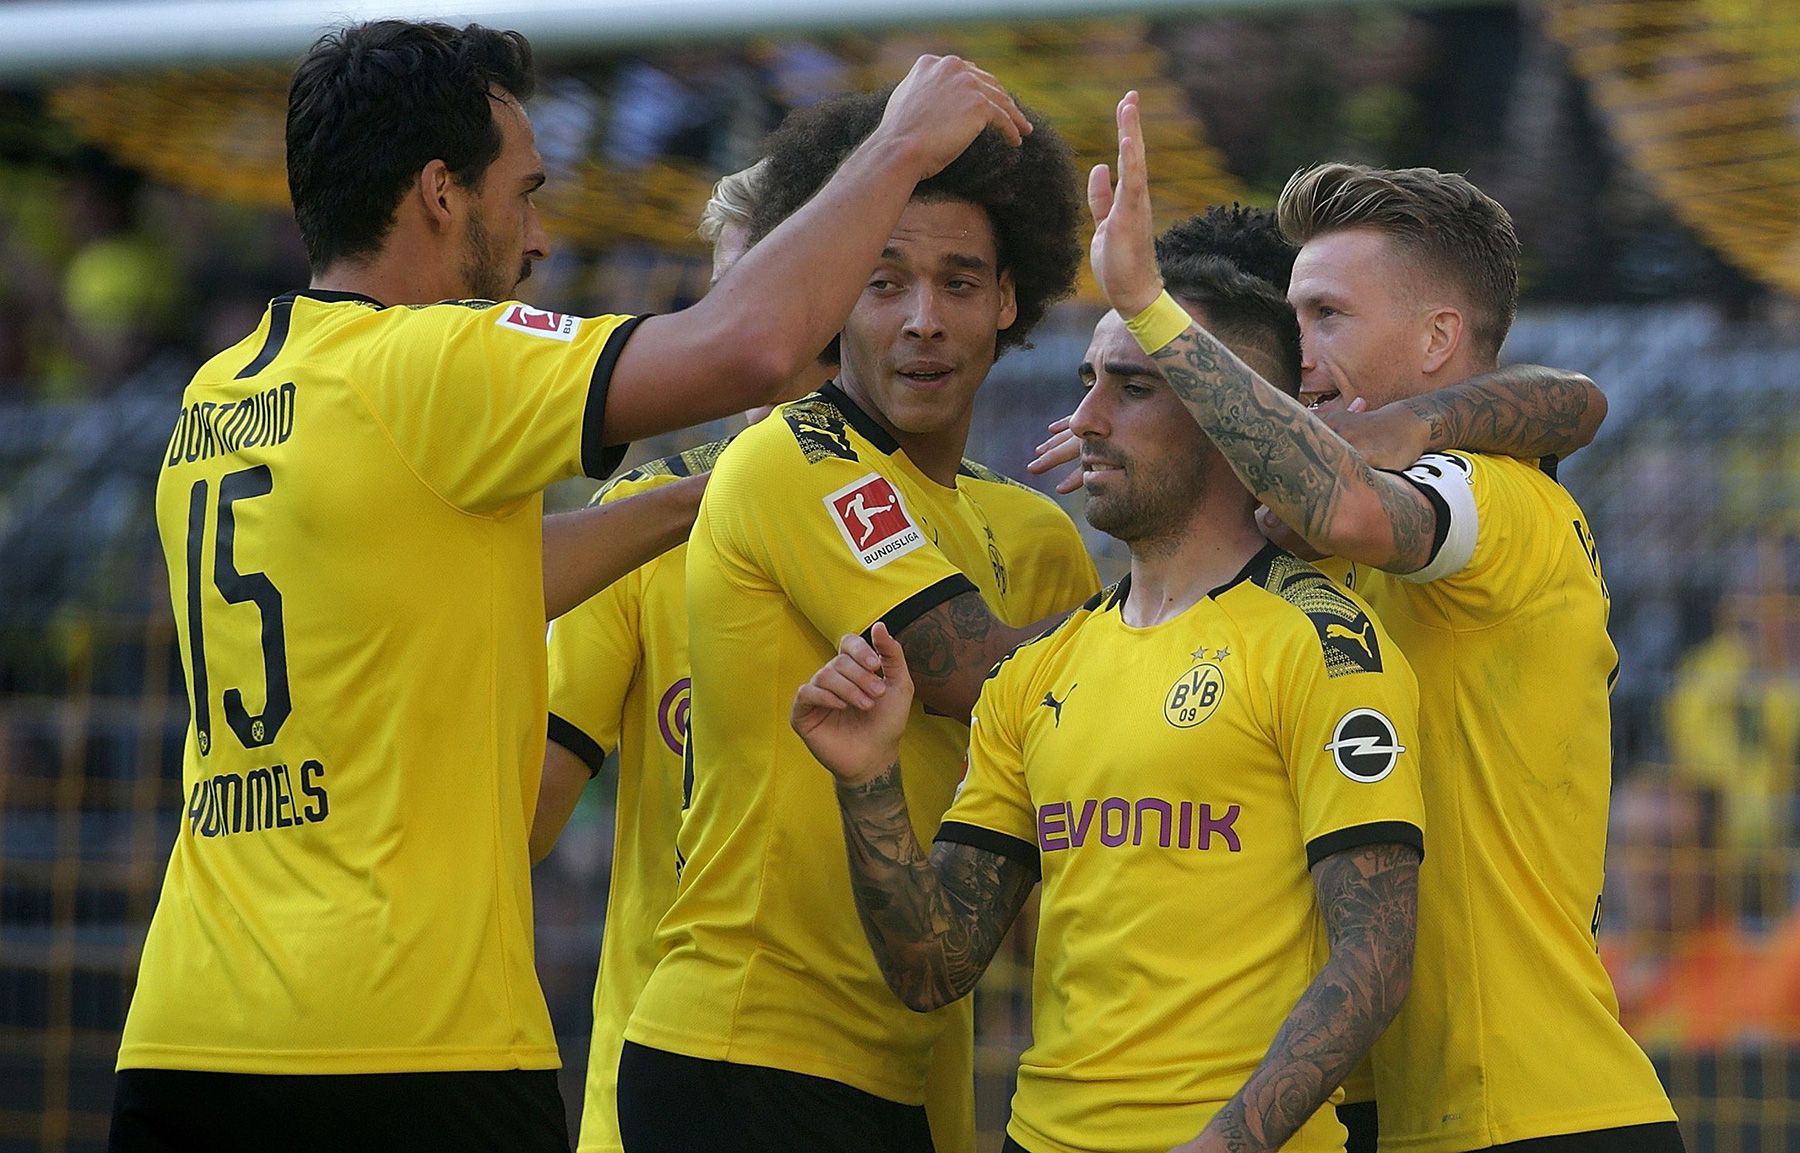 Los jugadores del Borussia Dortmund celebran un gol